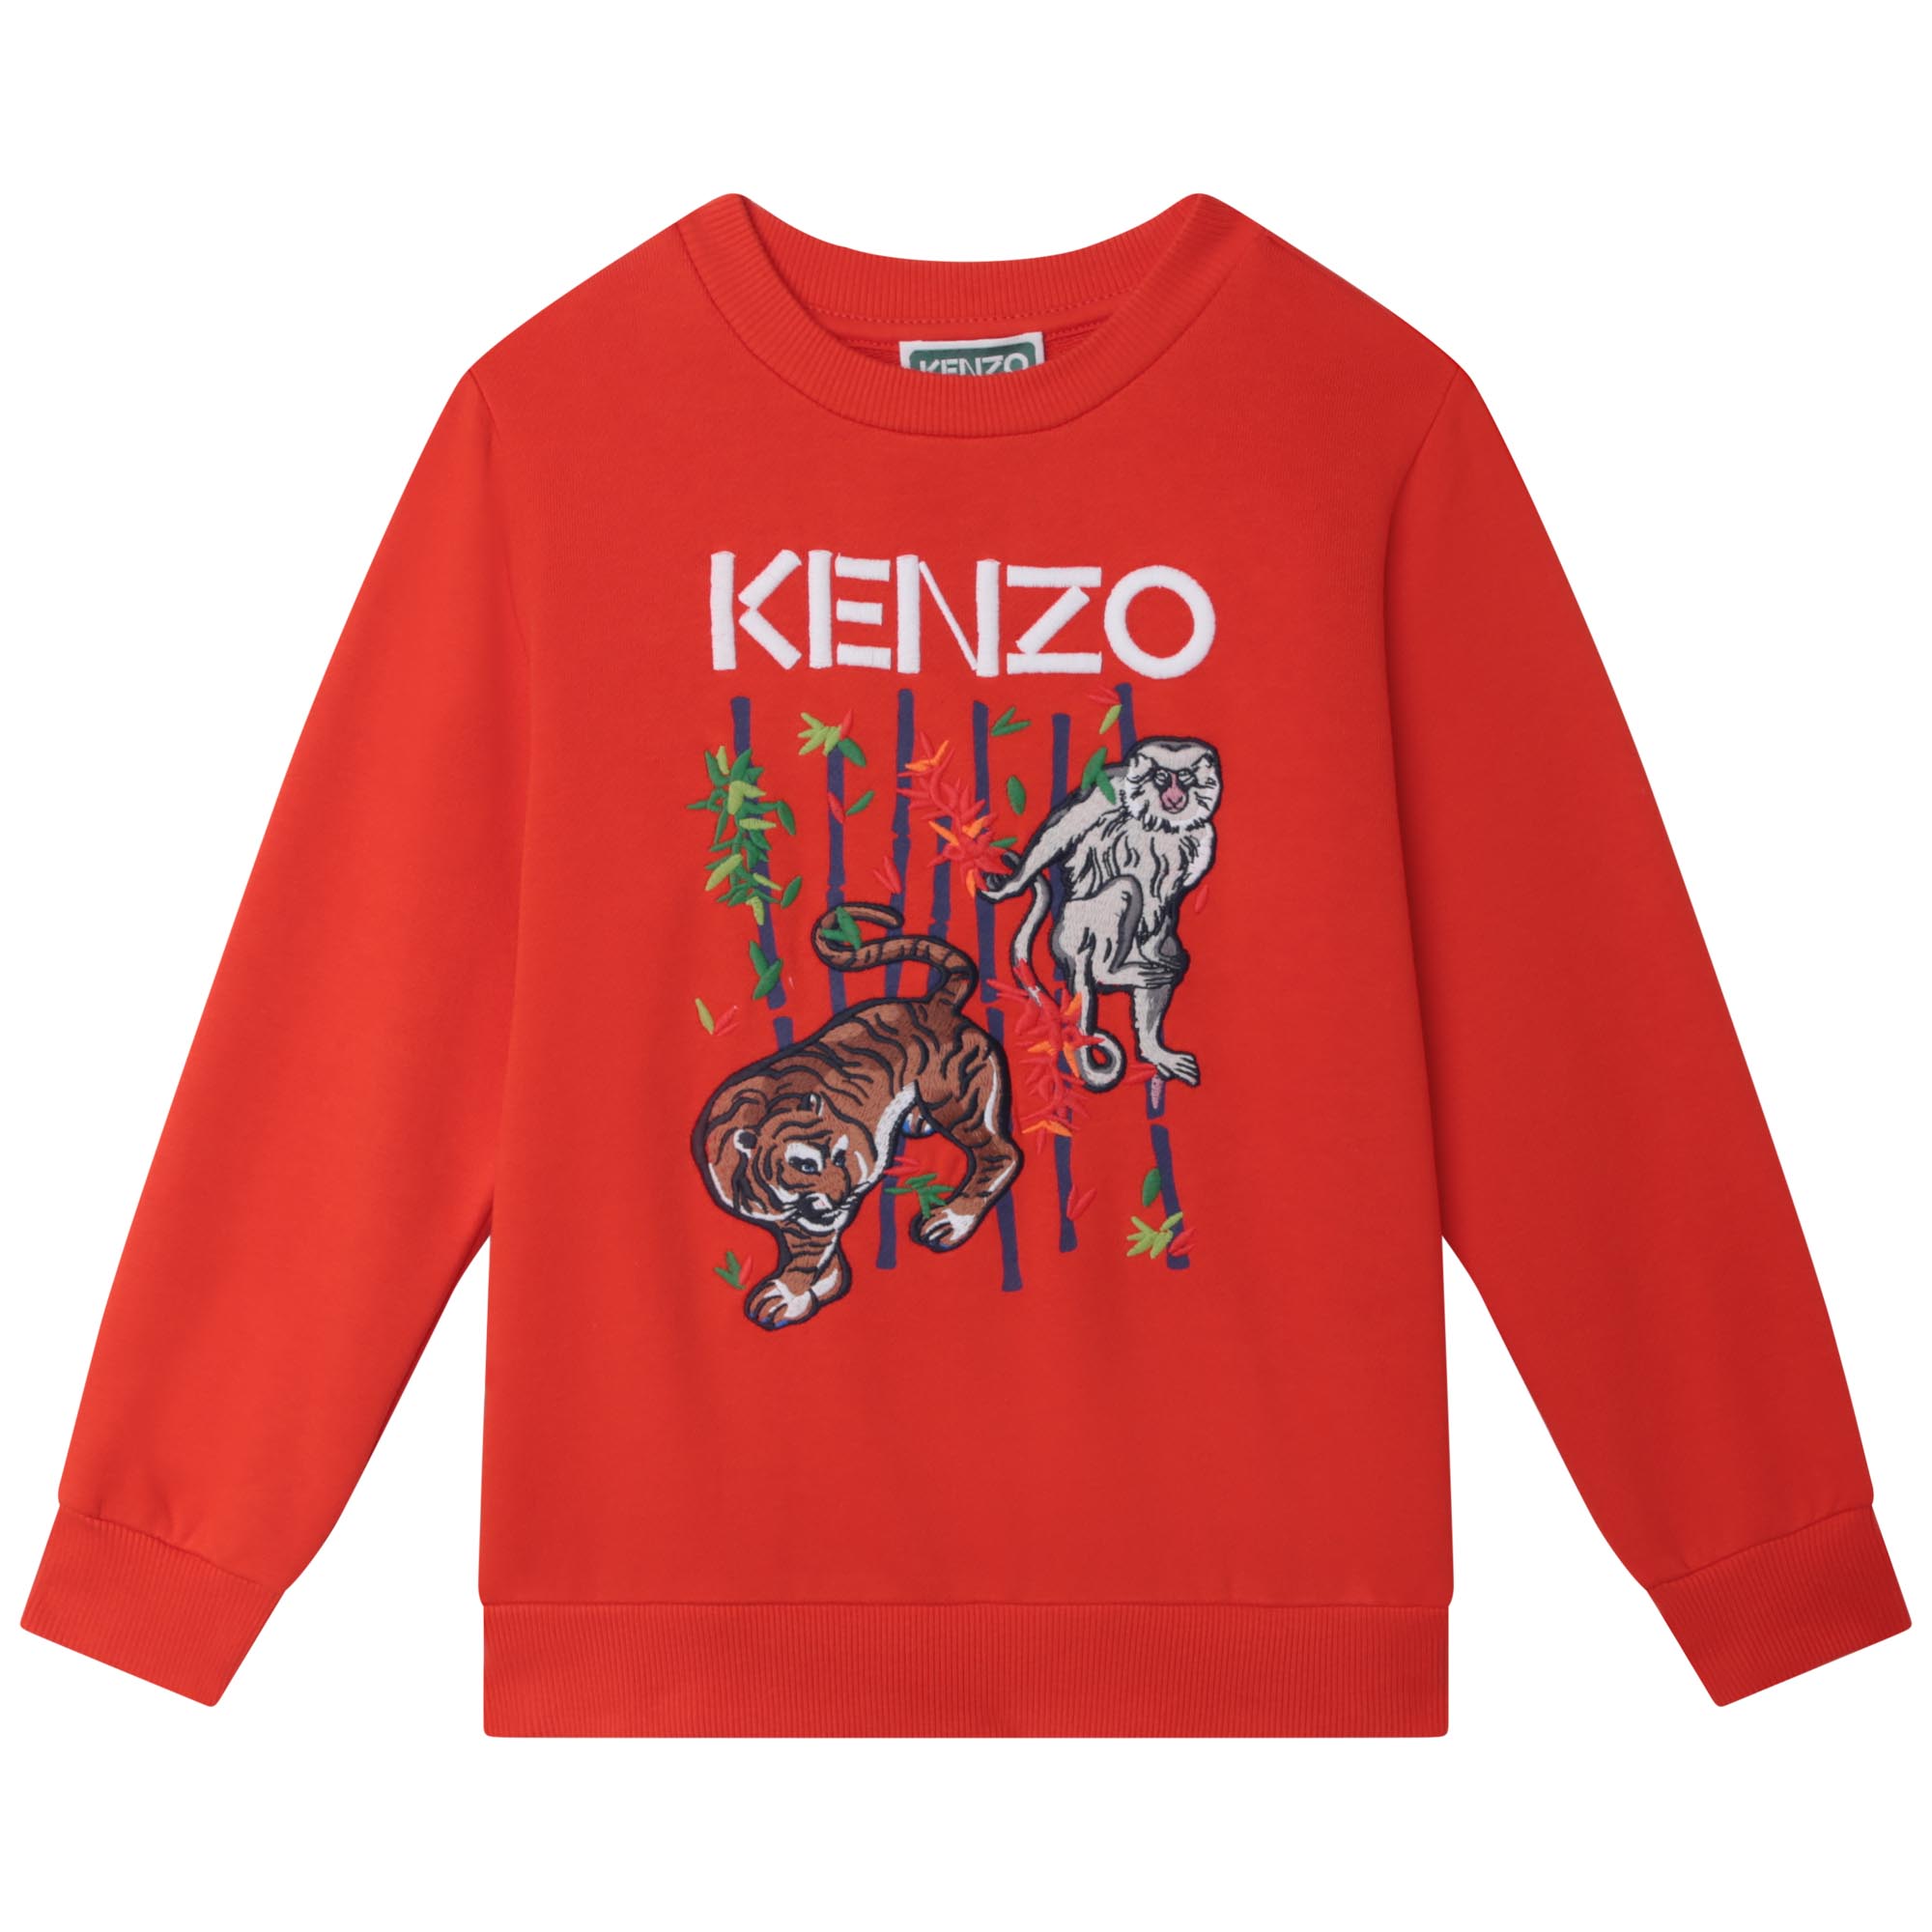 Bestickes Molton-Sweatshirt KENZO KIDS Für JUNGE